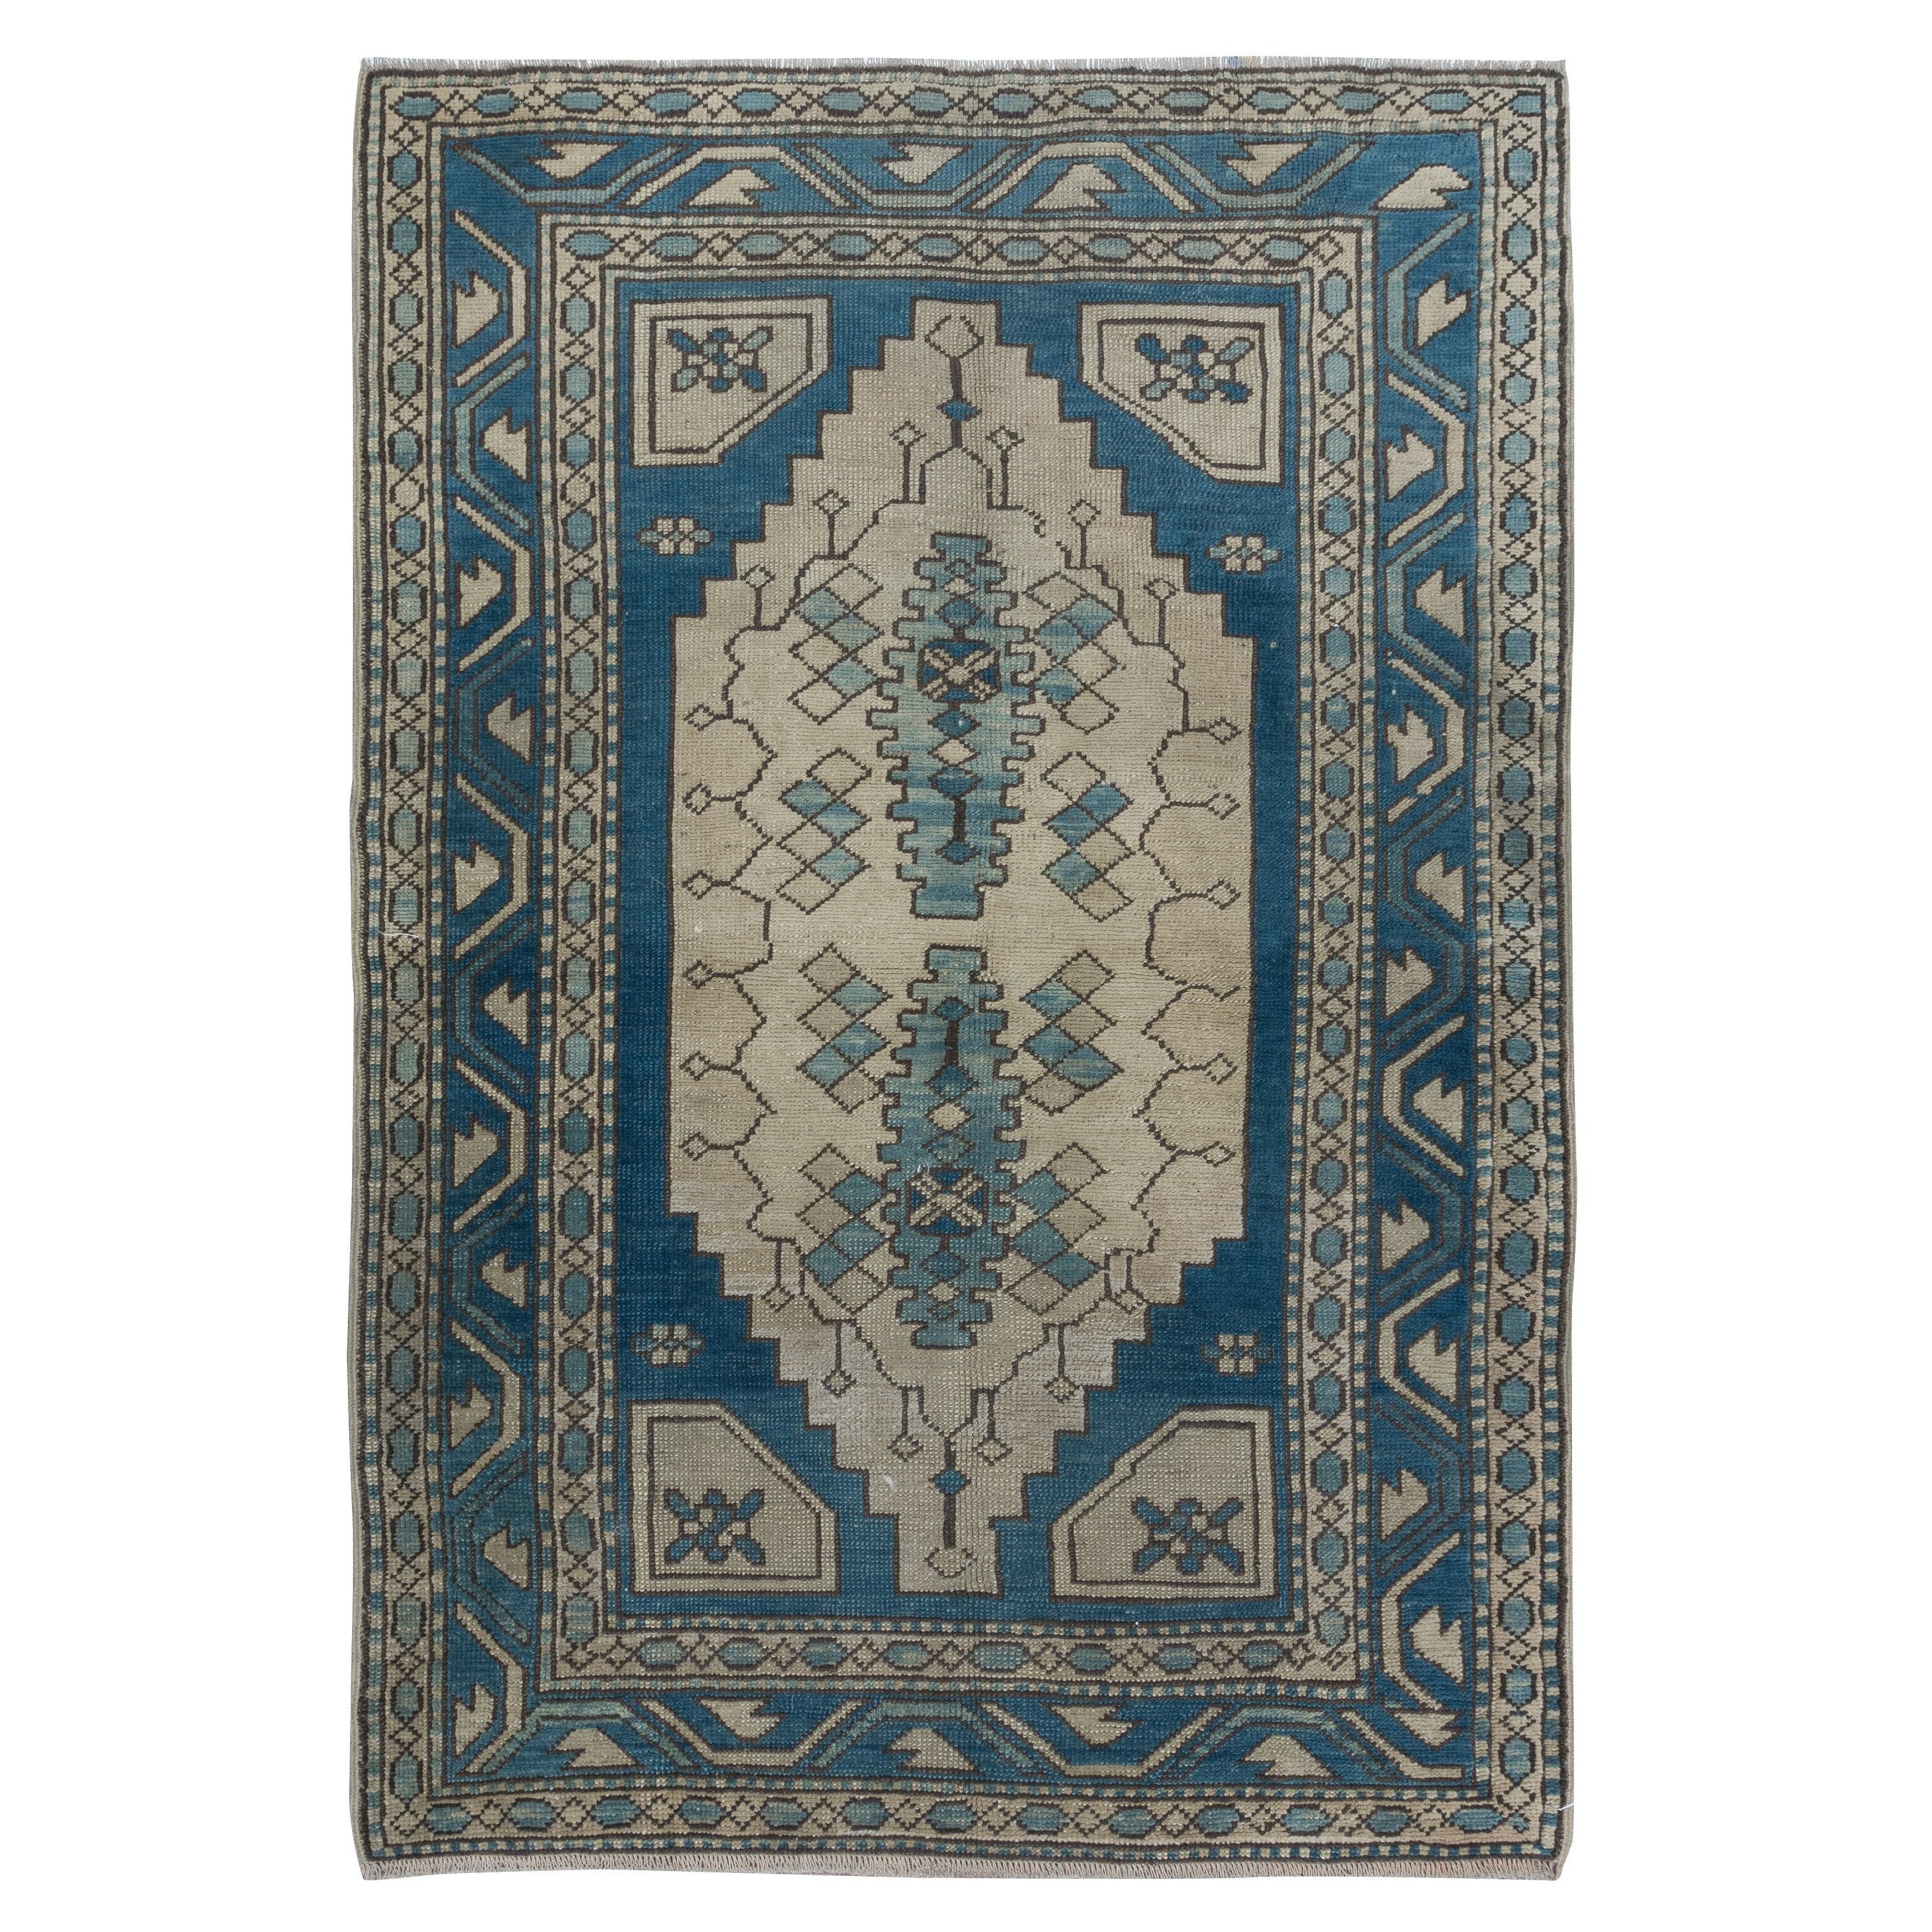 4x6 Ft tapis turc vintage en bleu foncé et beige, tapis de village en laine fait à la main